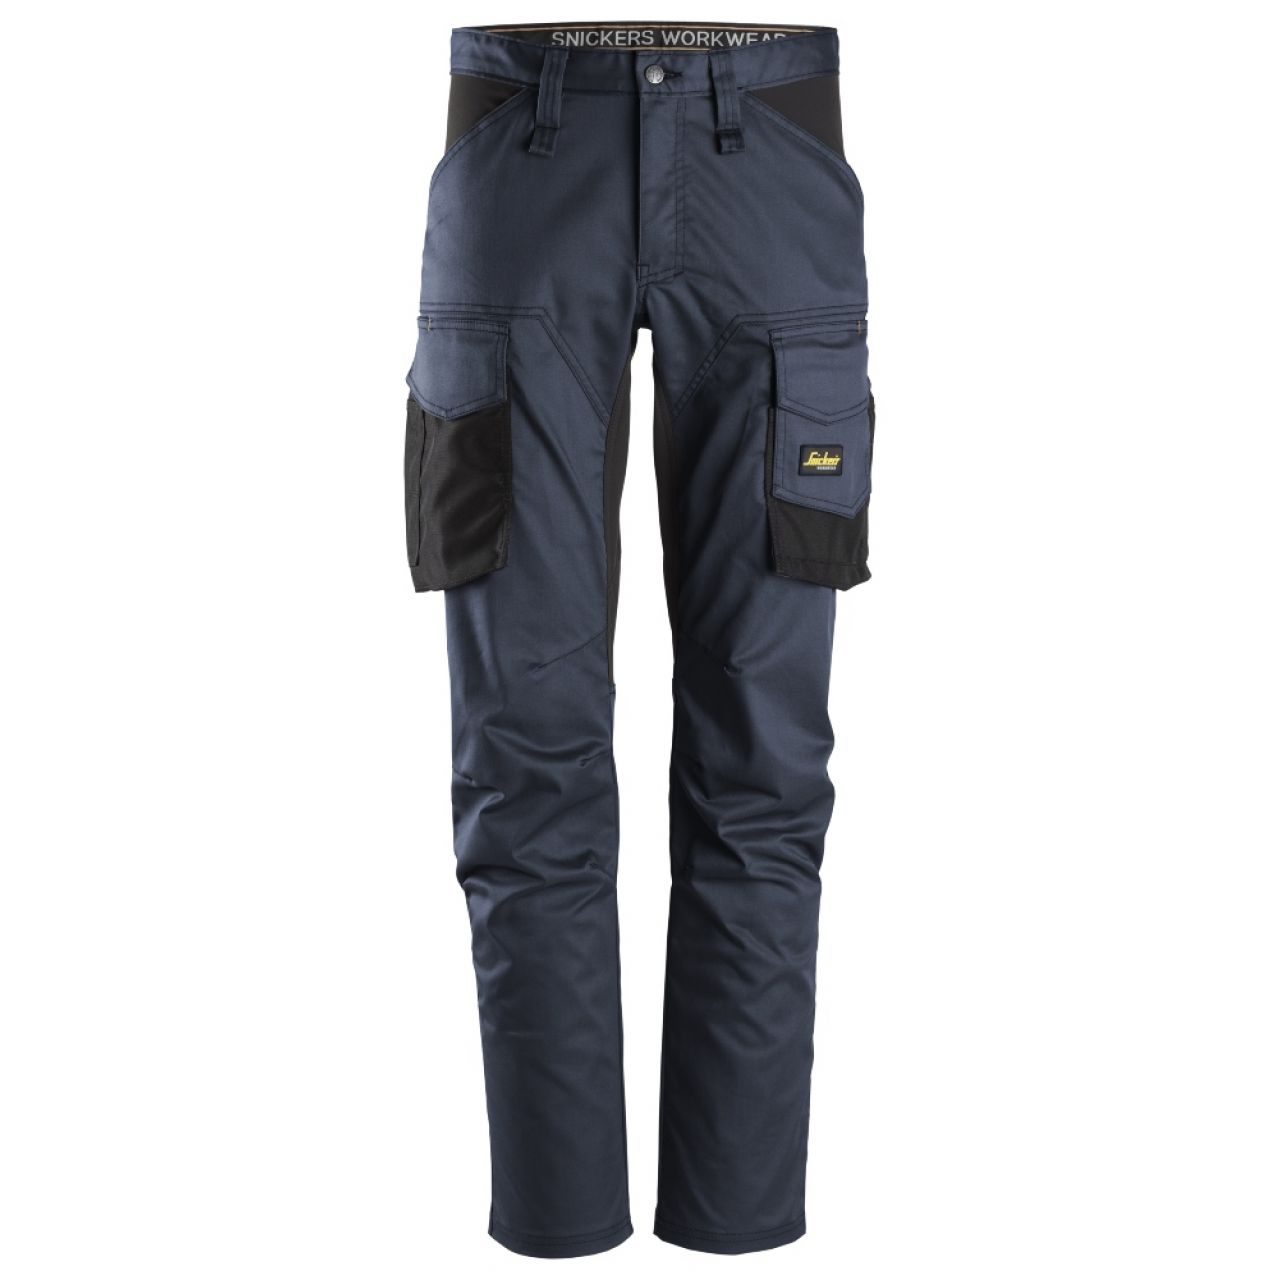 6803 Pantalones largos de trabajo elásticos sin bolsillos para las rodilleras AllroundWork azul marino-negro talla 158